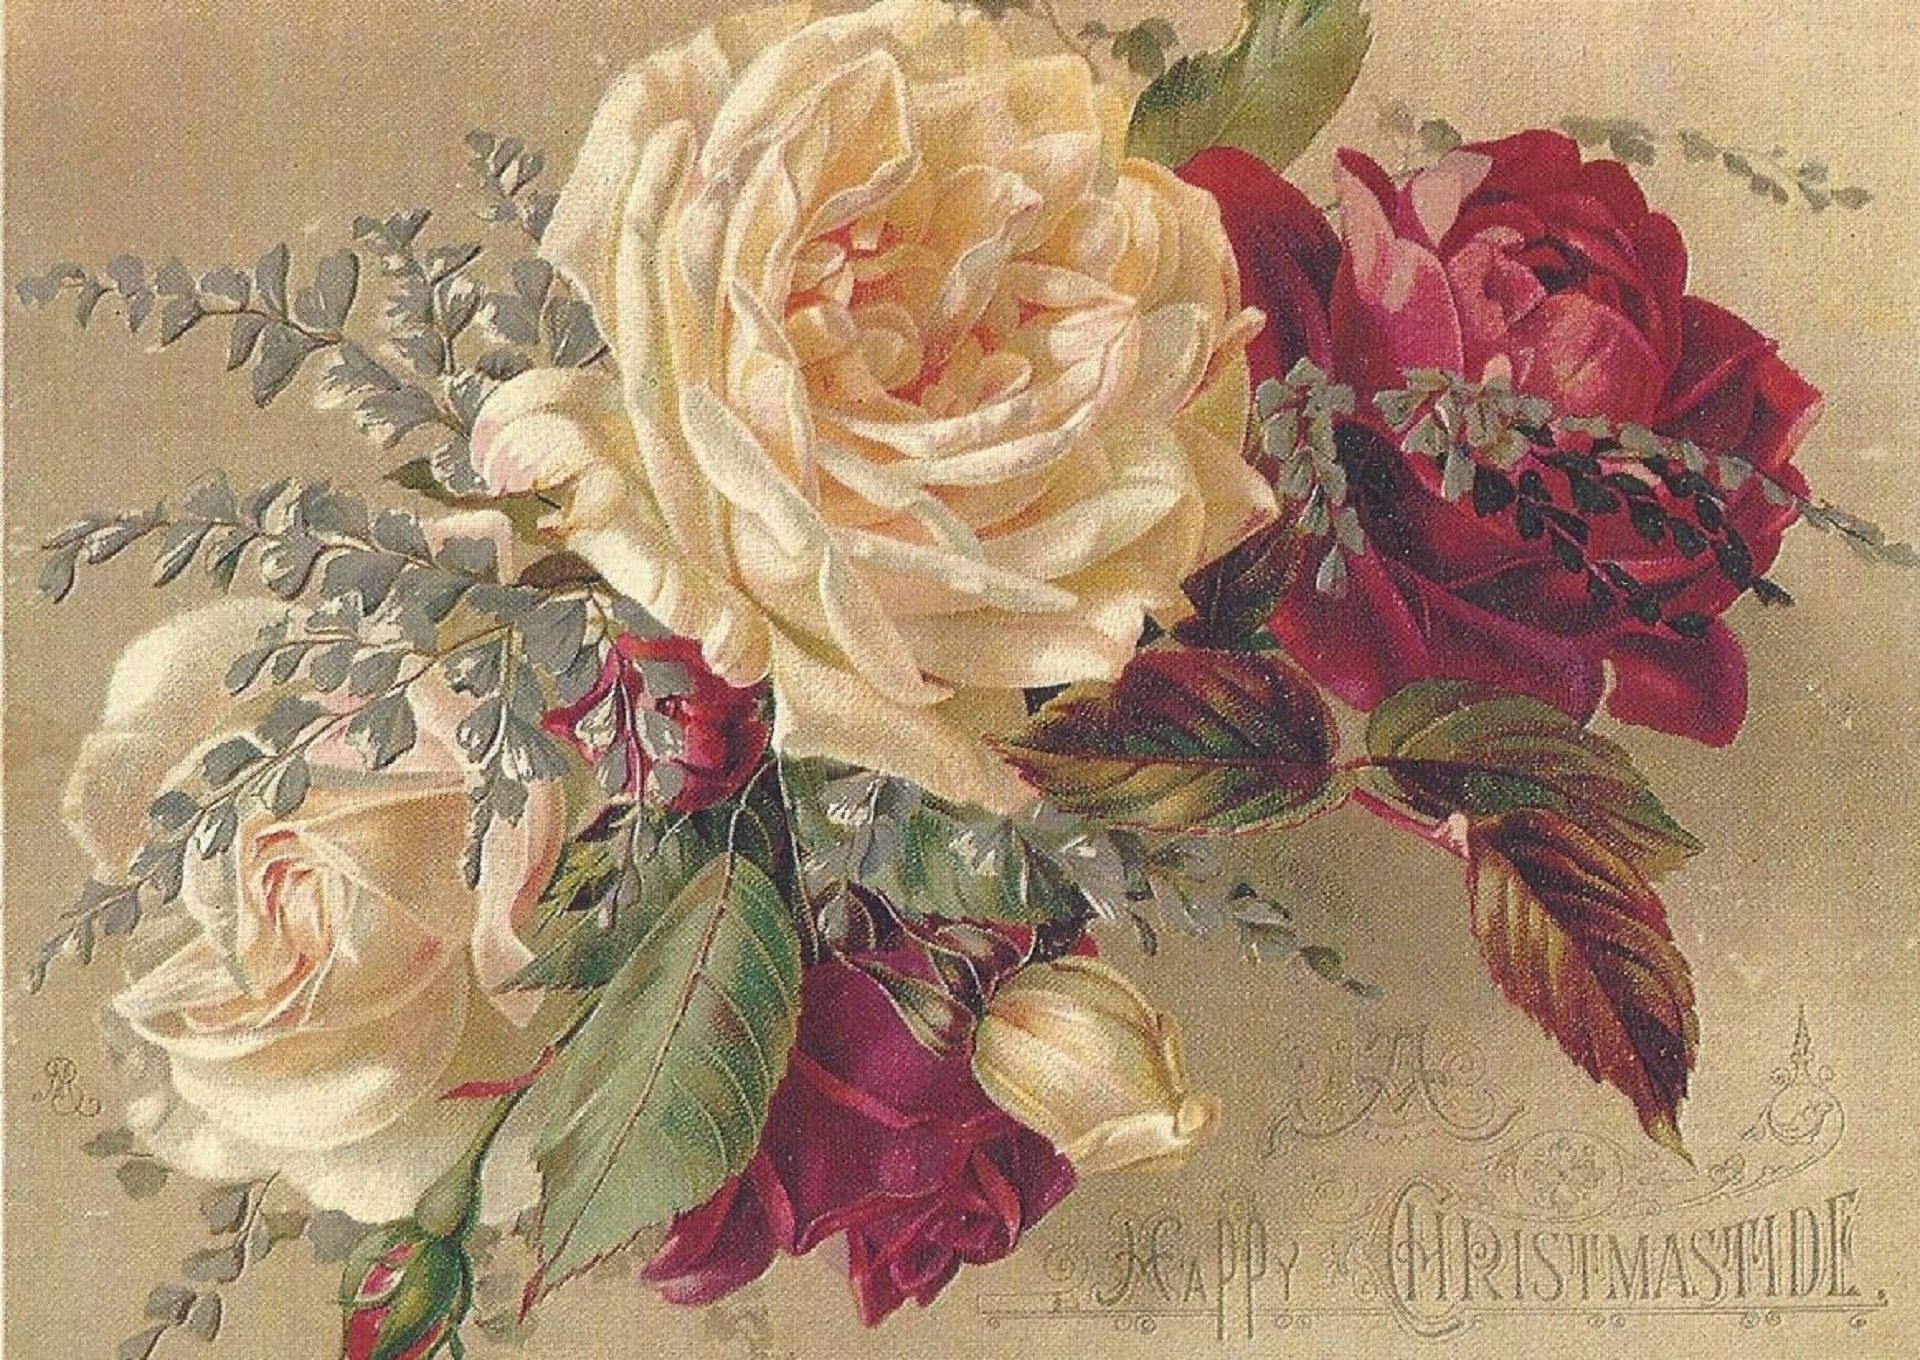 Винтажные розы